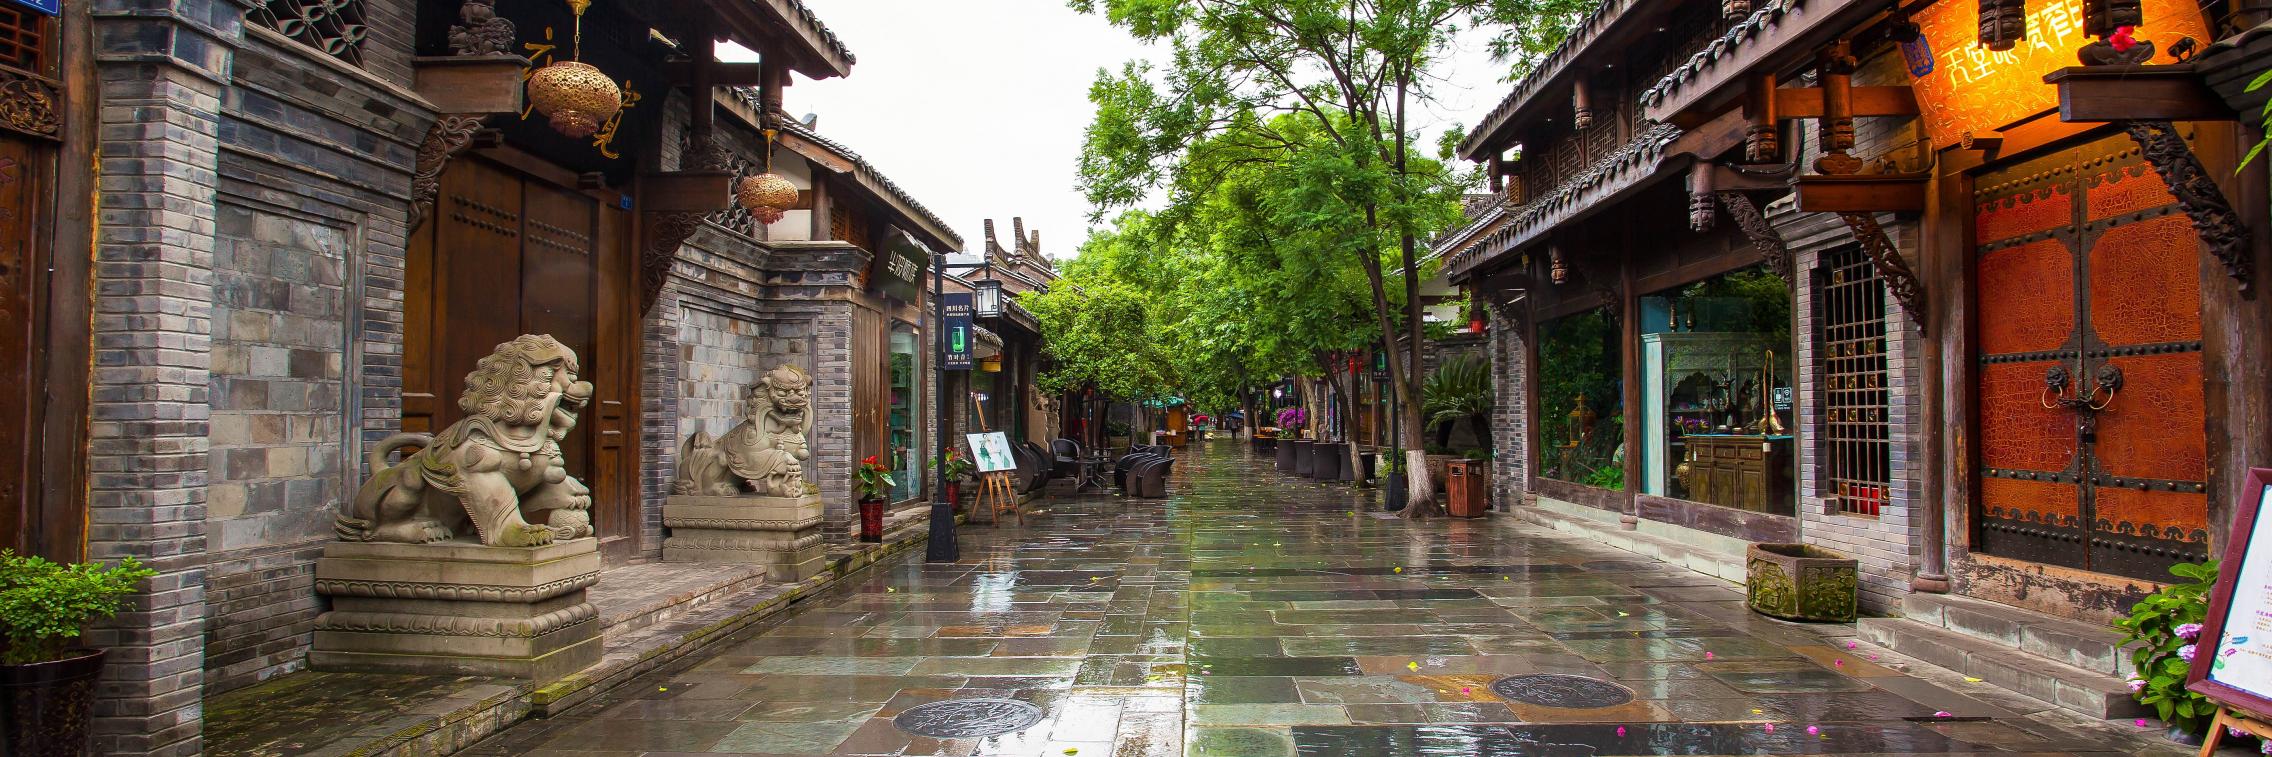 Rainy street Beijing